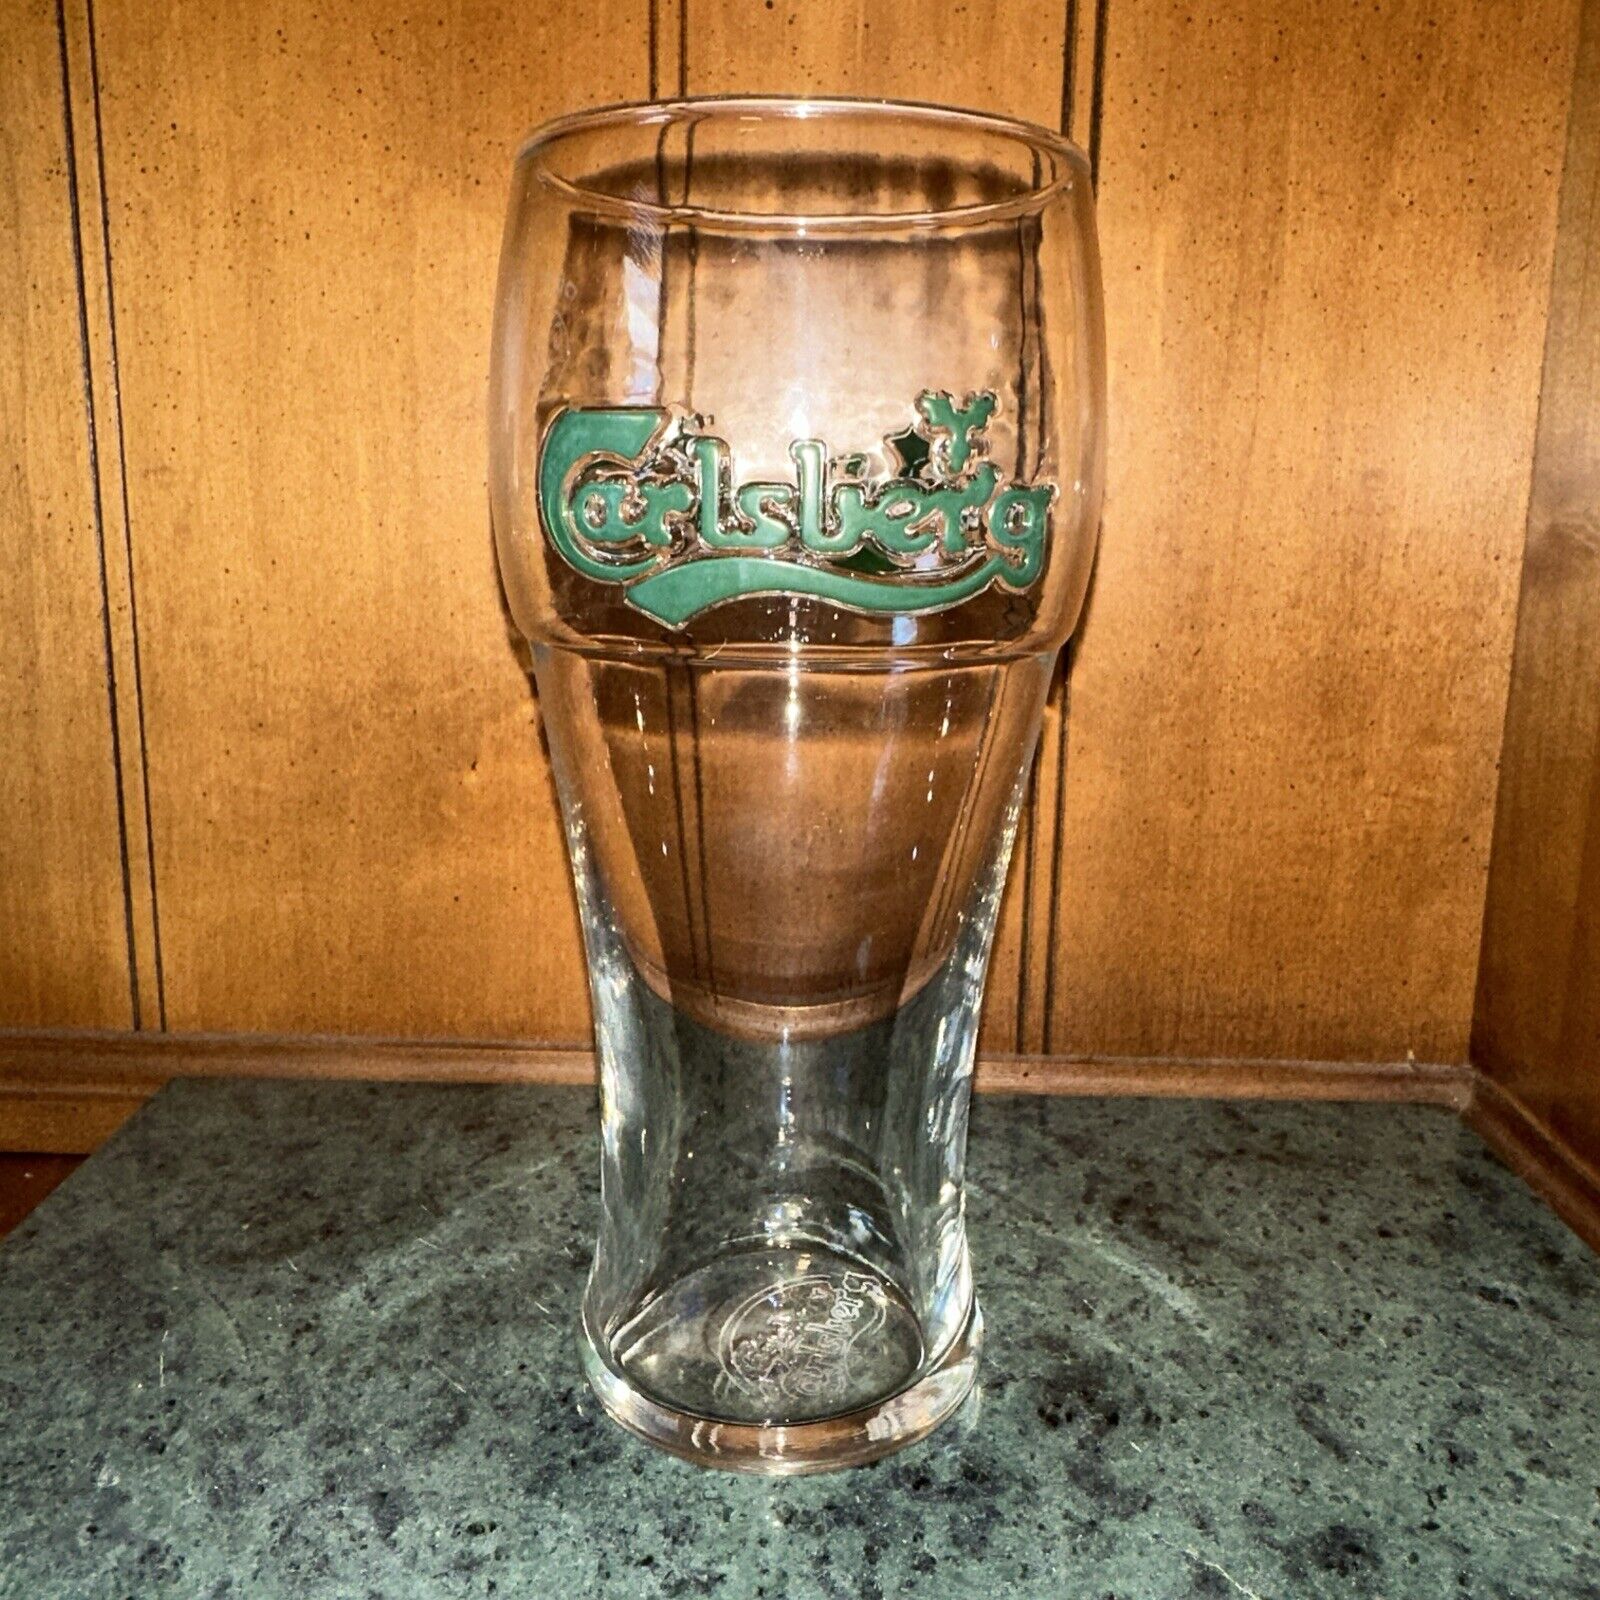 Carlsberg Beer Glass Vintage Pint Embossed Logo in Raised Green Letters 7” Tall